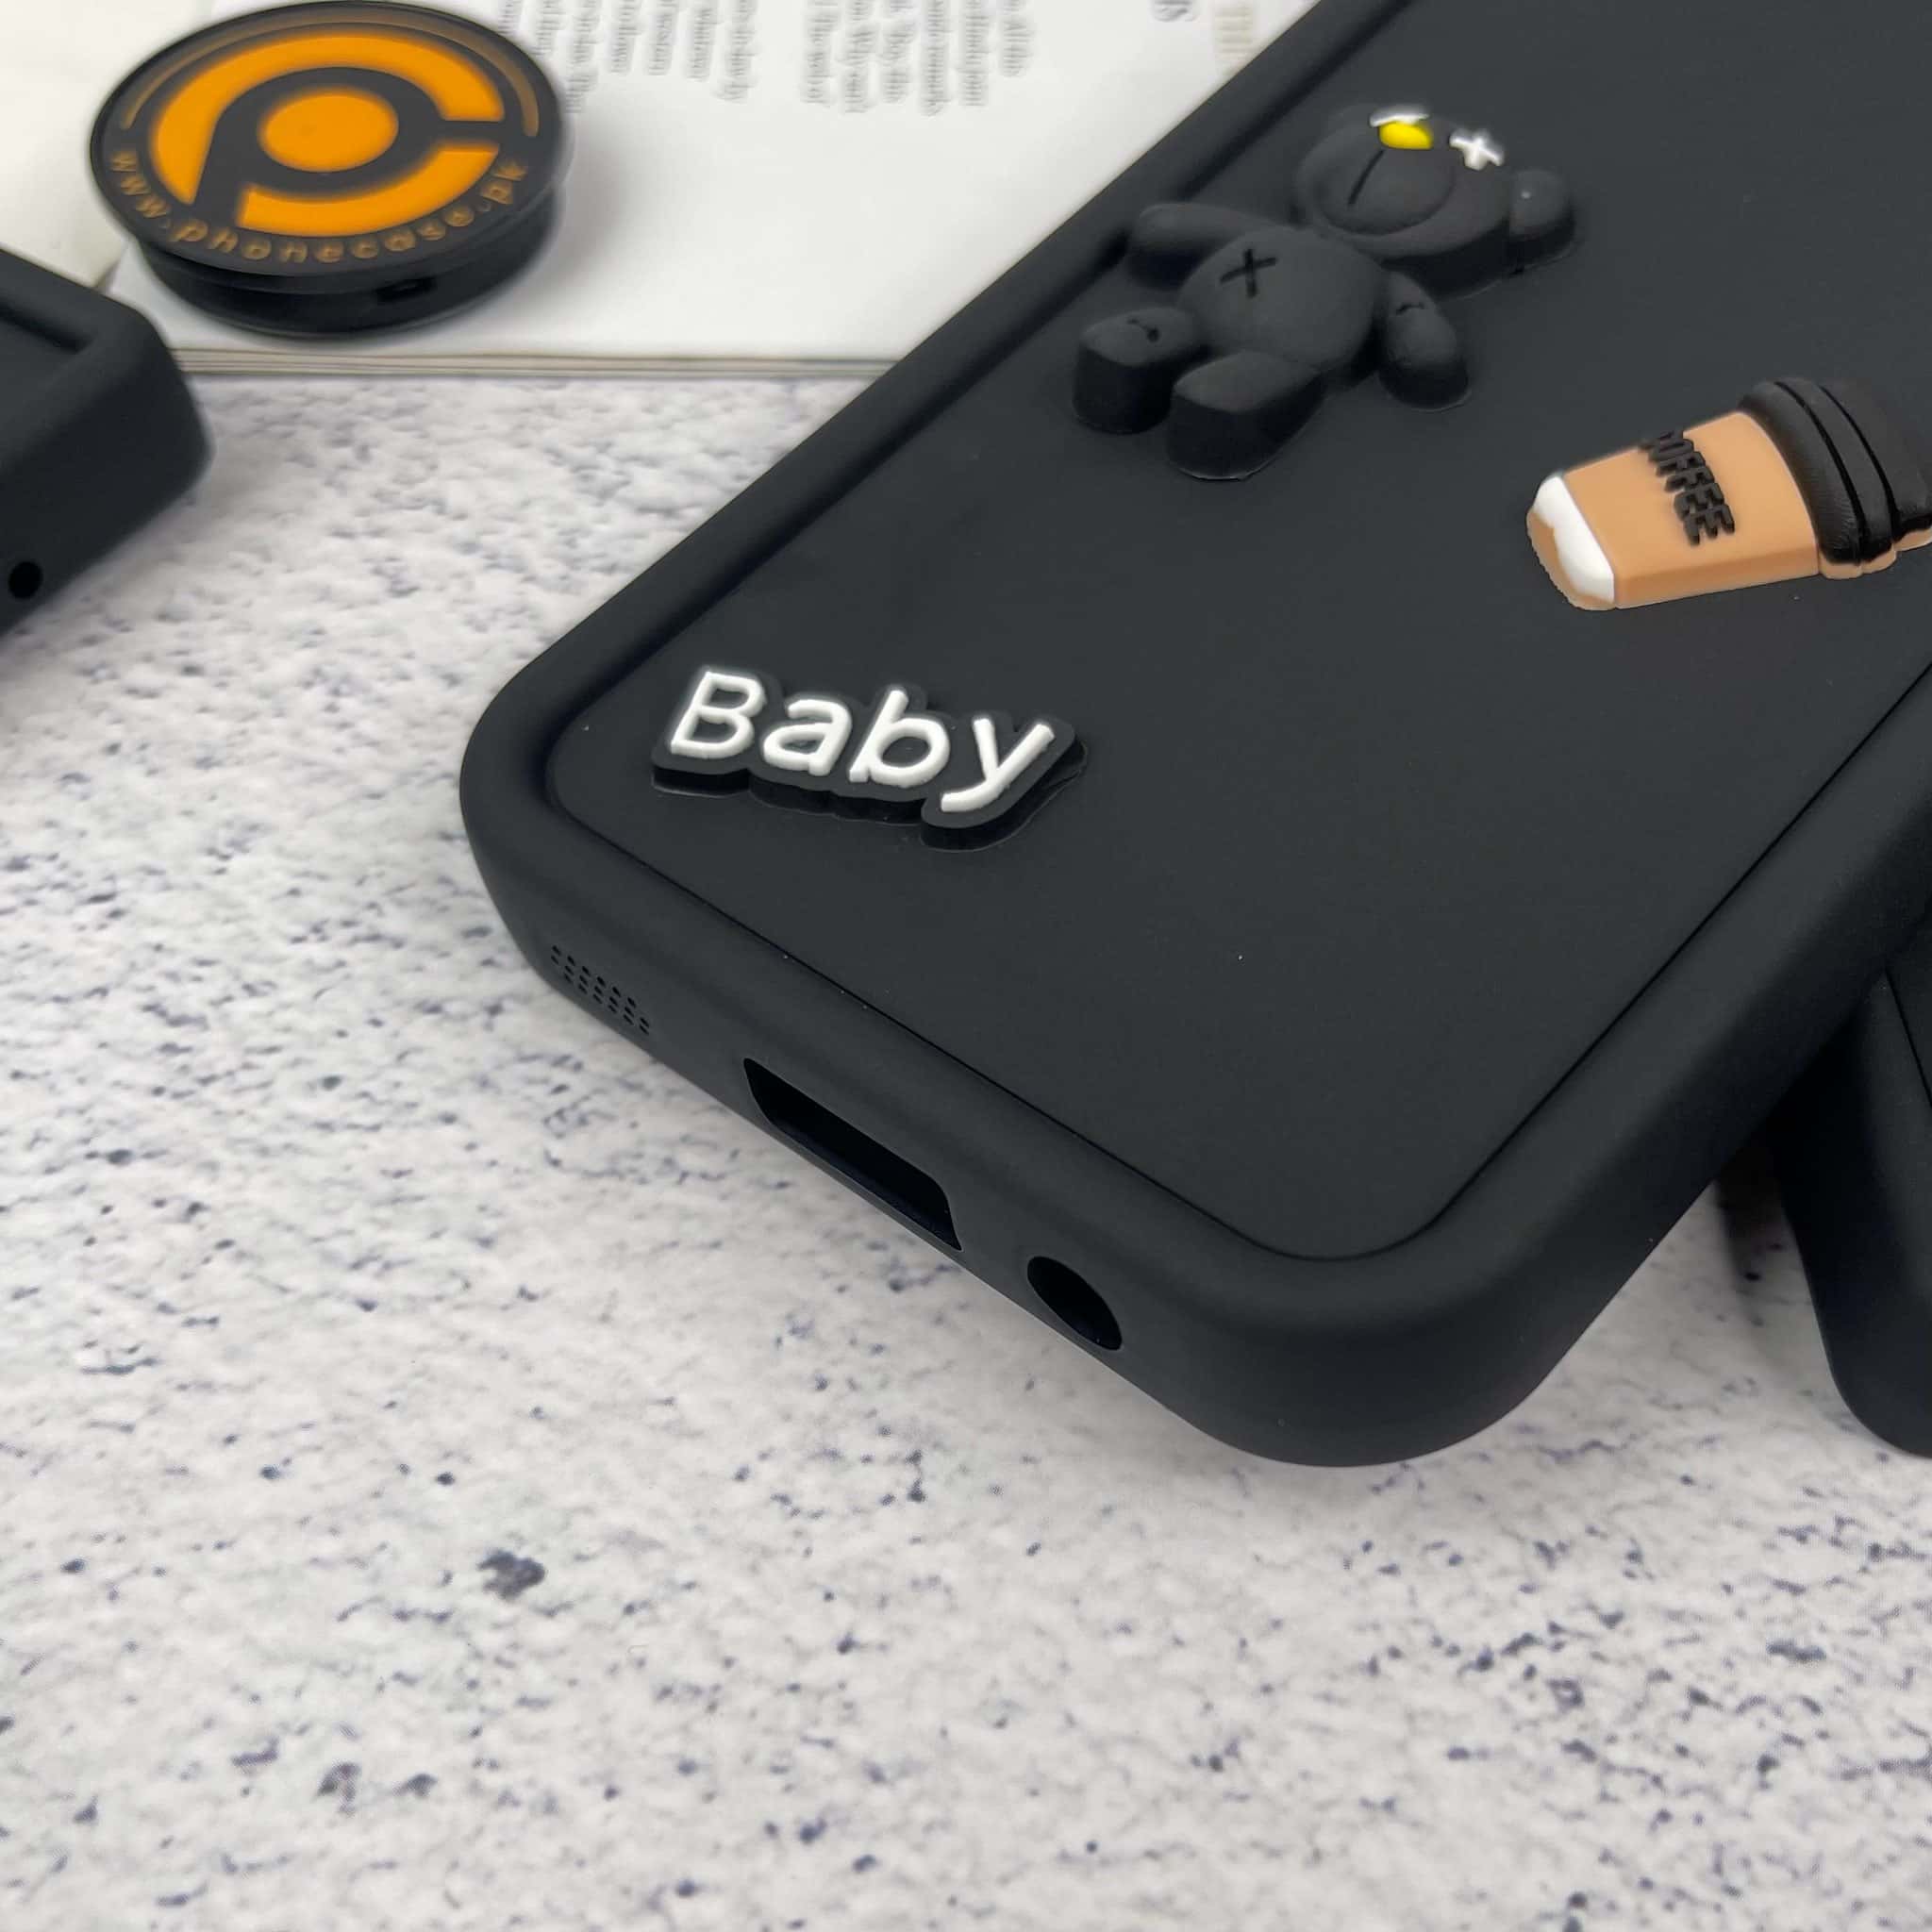 Galaxy A05 Cute 3D Black Bear Icons Liquid Silicon Case